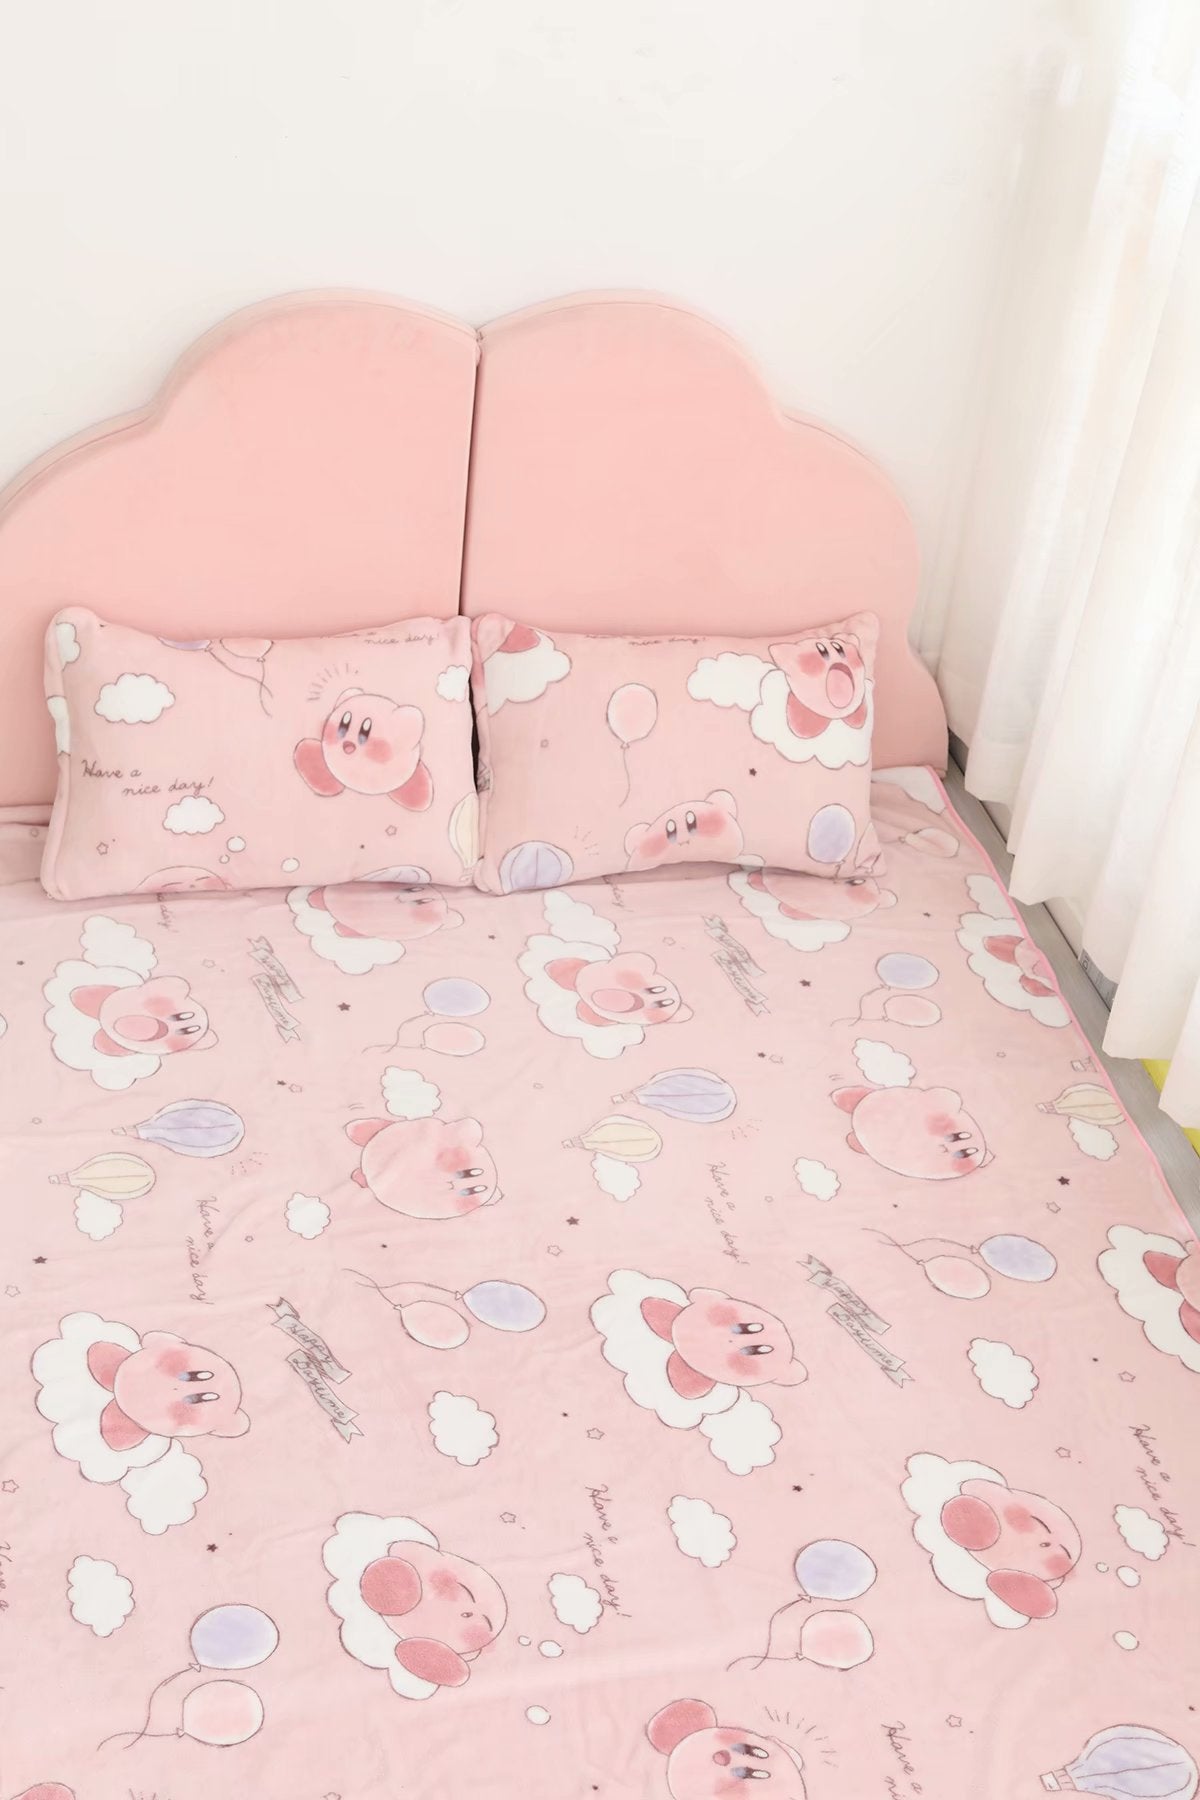 Yoriichi Fleece Blanket Custom Demon Slayer Anime Manga Bedding – Perfectivy